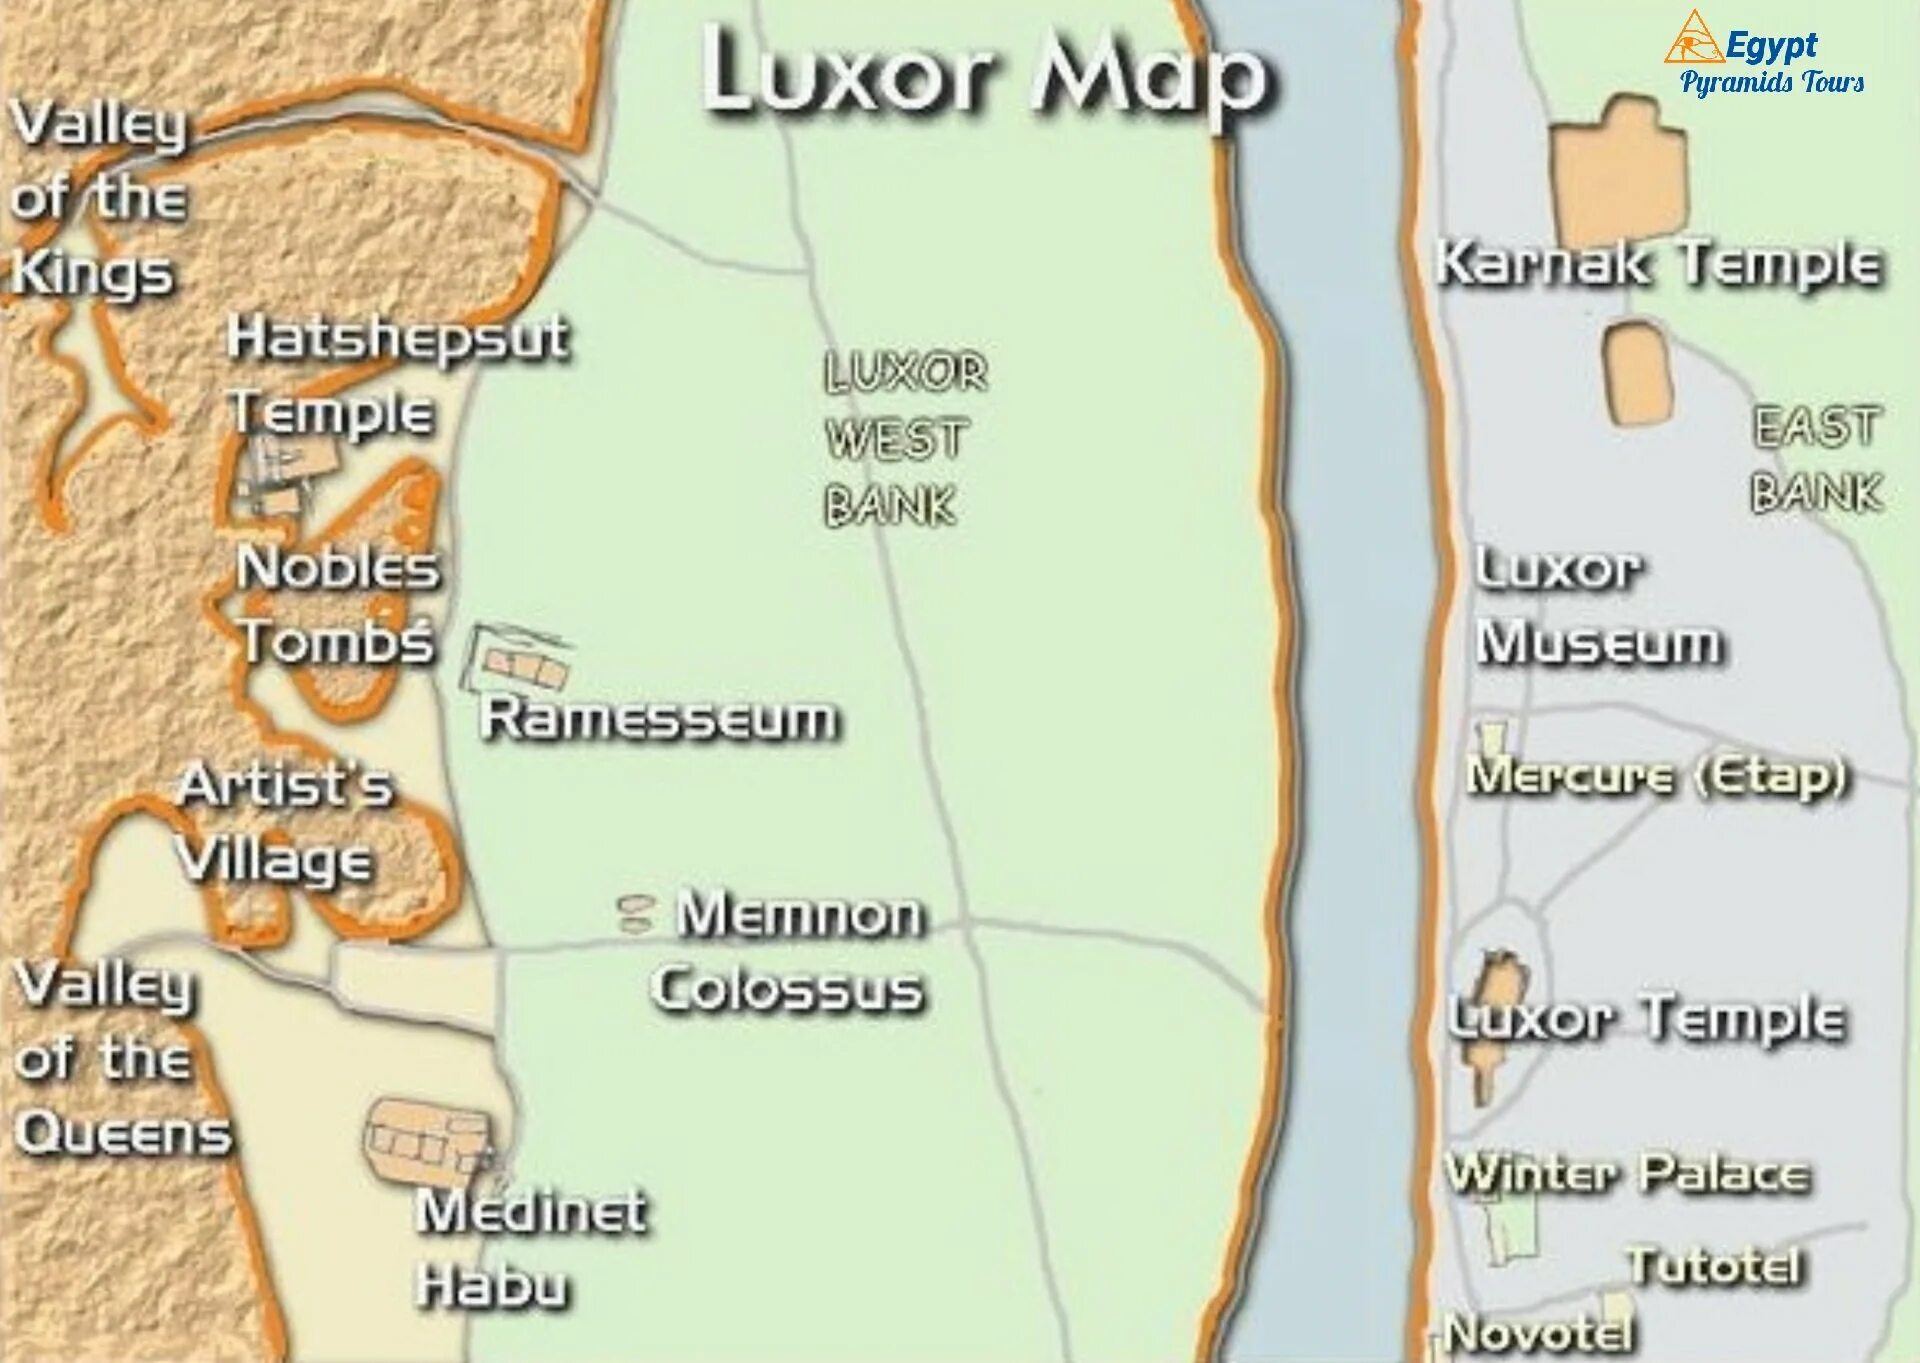 Луксор на карте. Достопримечательности Луксора на карте. Луксор на карте Египта. Луксор достопримечательности на карте. Карнак и Луксор на карте.